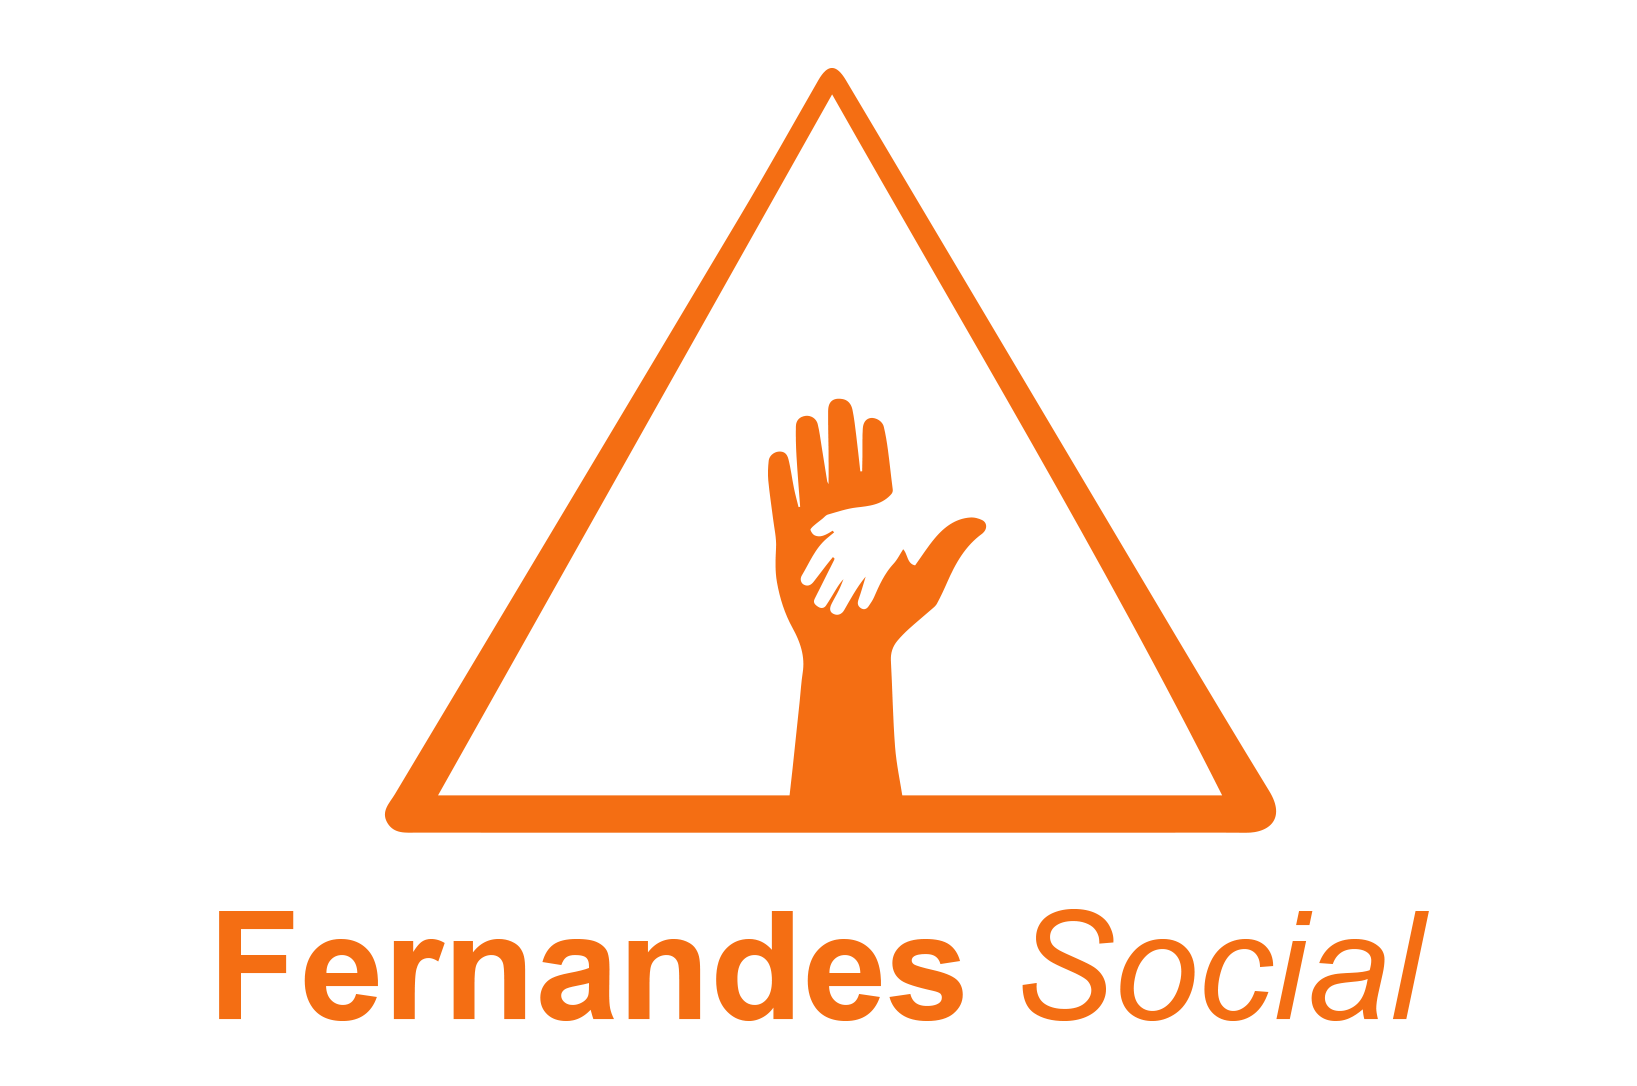 Fernandes Social